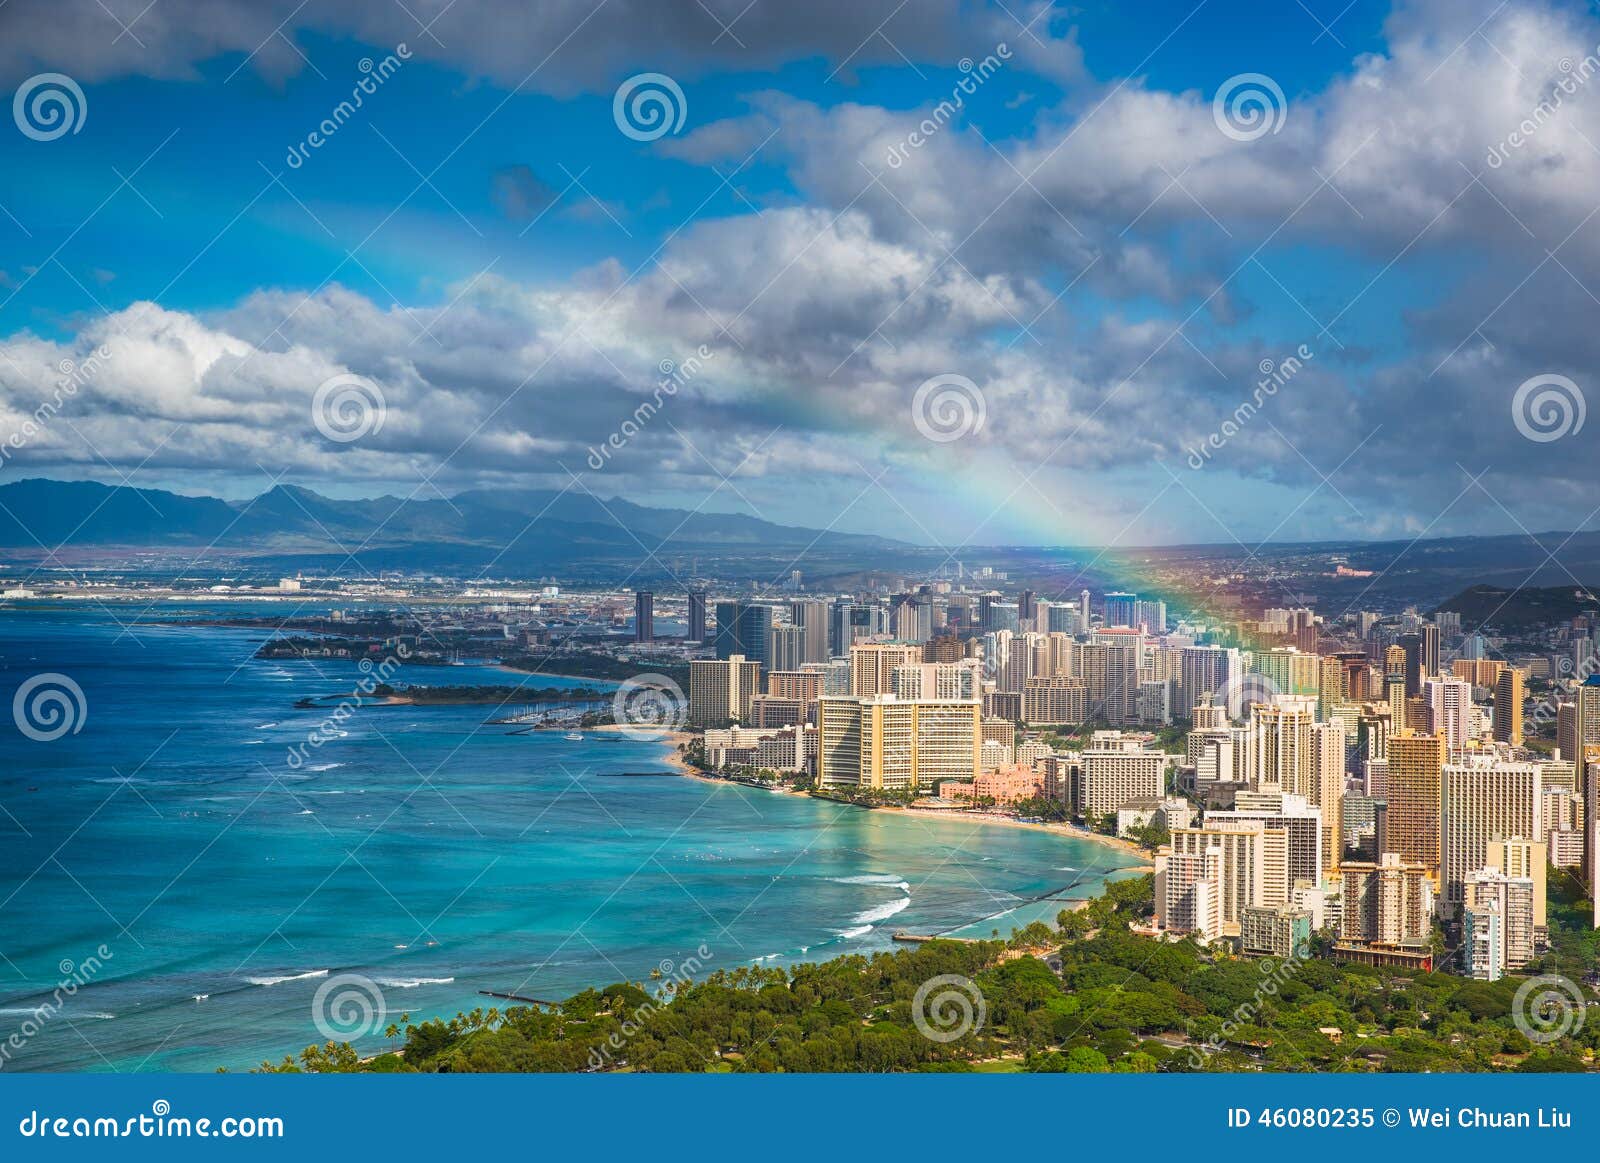 rainbow over hawaii skyline